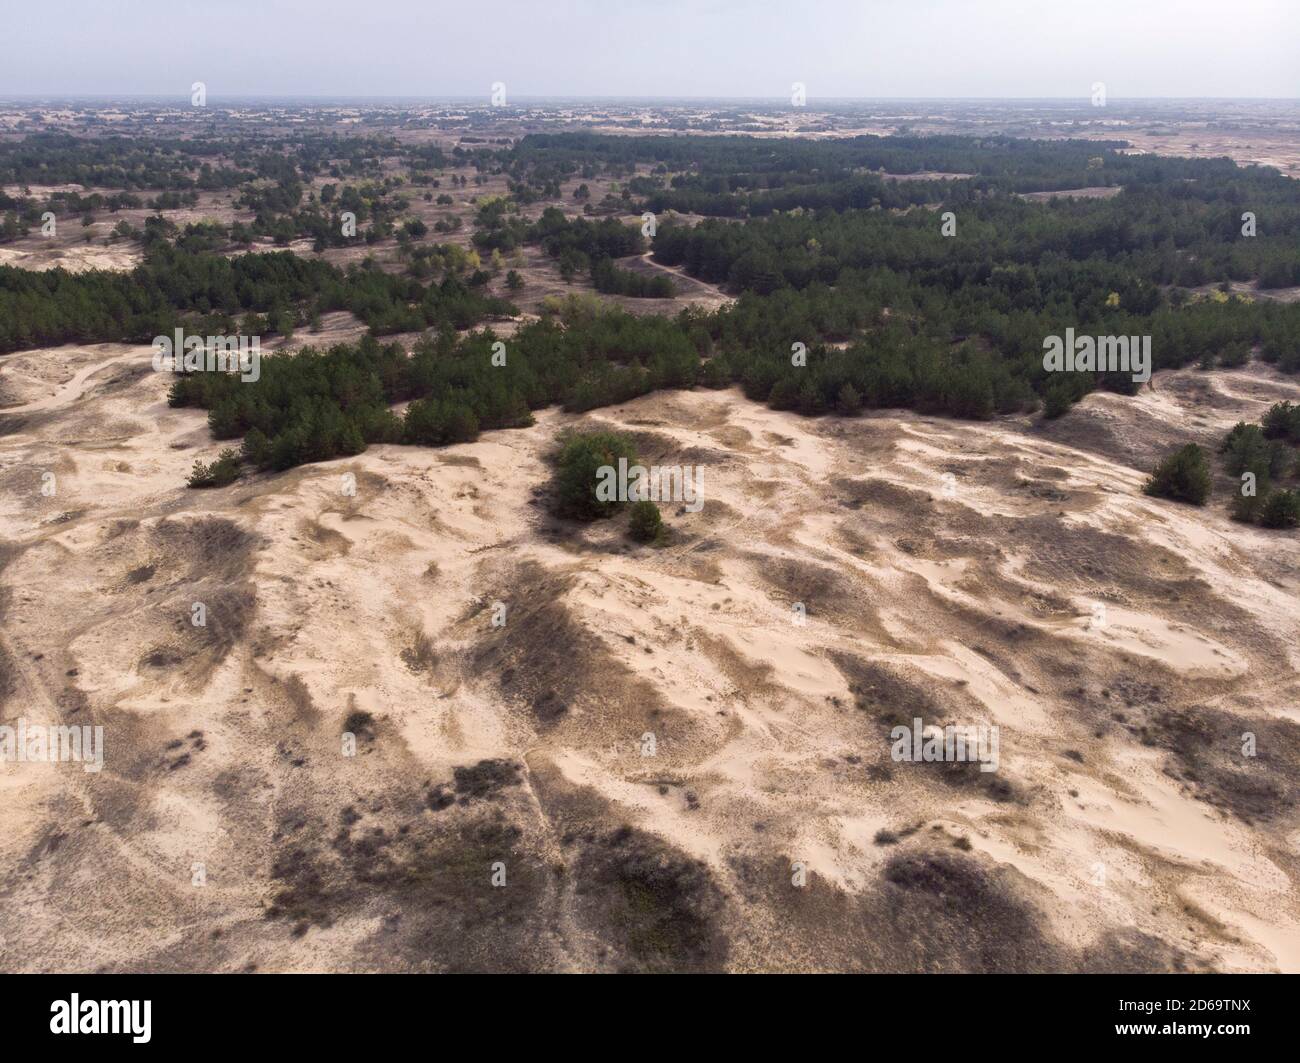 Volo del drone aereo nel deserto più grande d'Europa, Ucraina - Oleshky Sands con alcuni cespugli e alberi di pino. Piante nel deserto, molta sabbia gialla Foto Stock